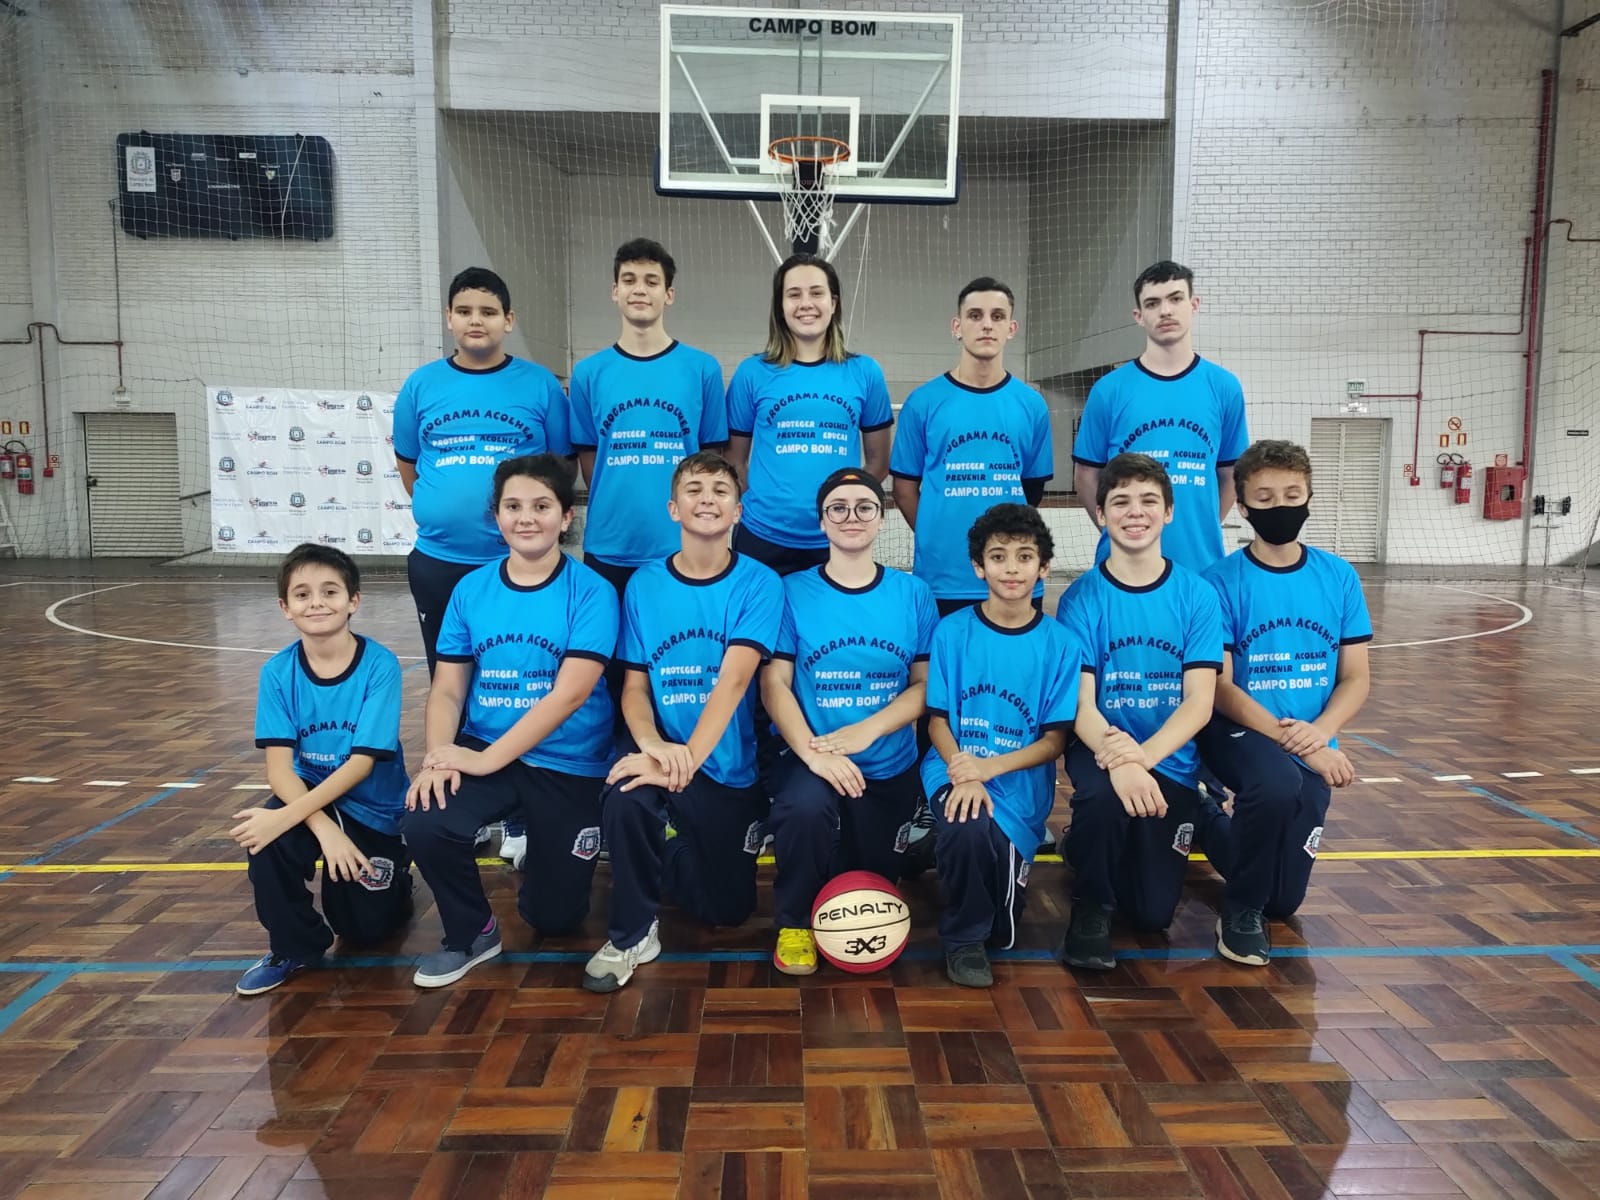 Jovens atletas de projeto esportivo vencem jogo após doação de uniformes  pelo Grupo Hinova – Grupo Hinova